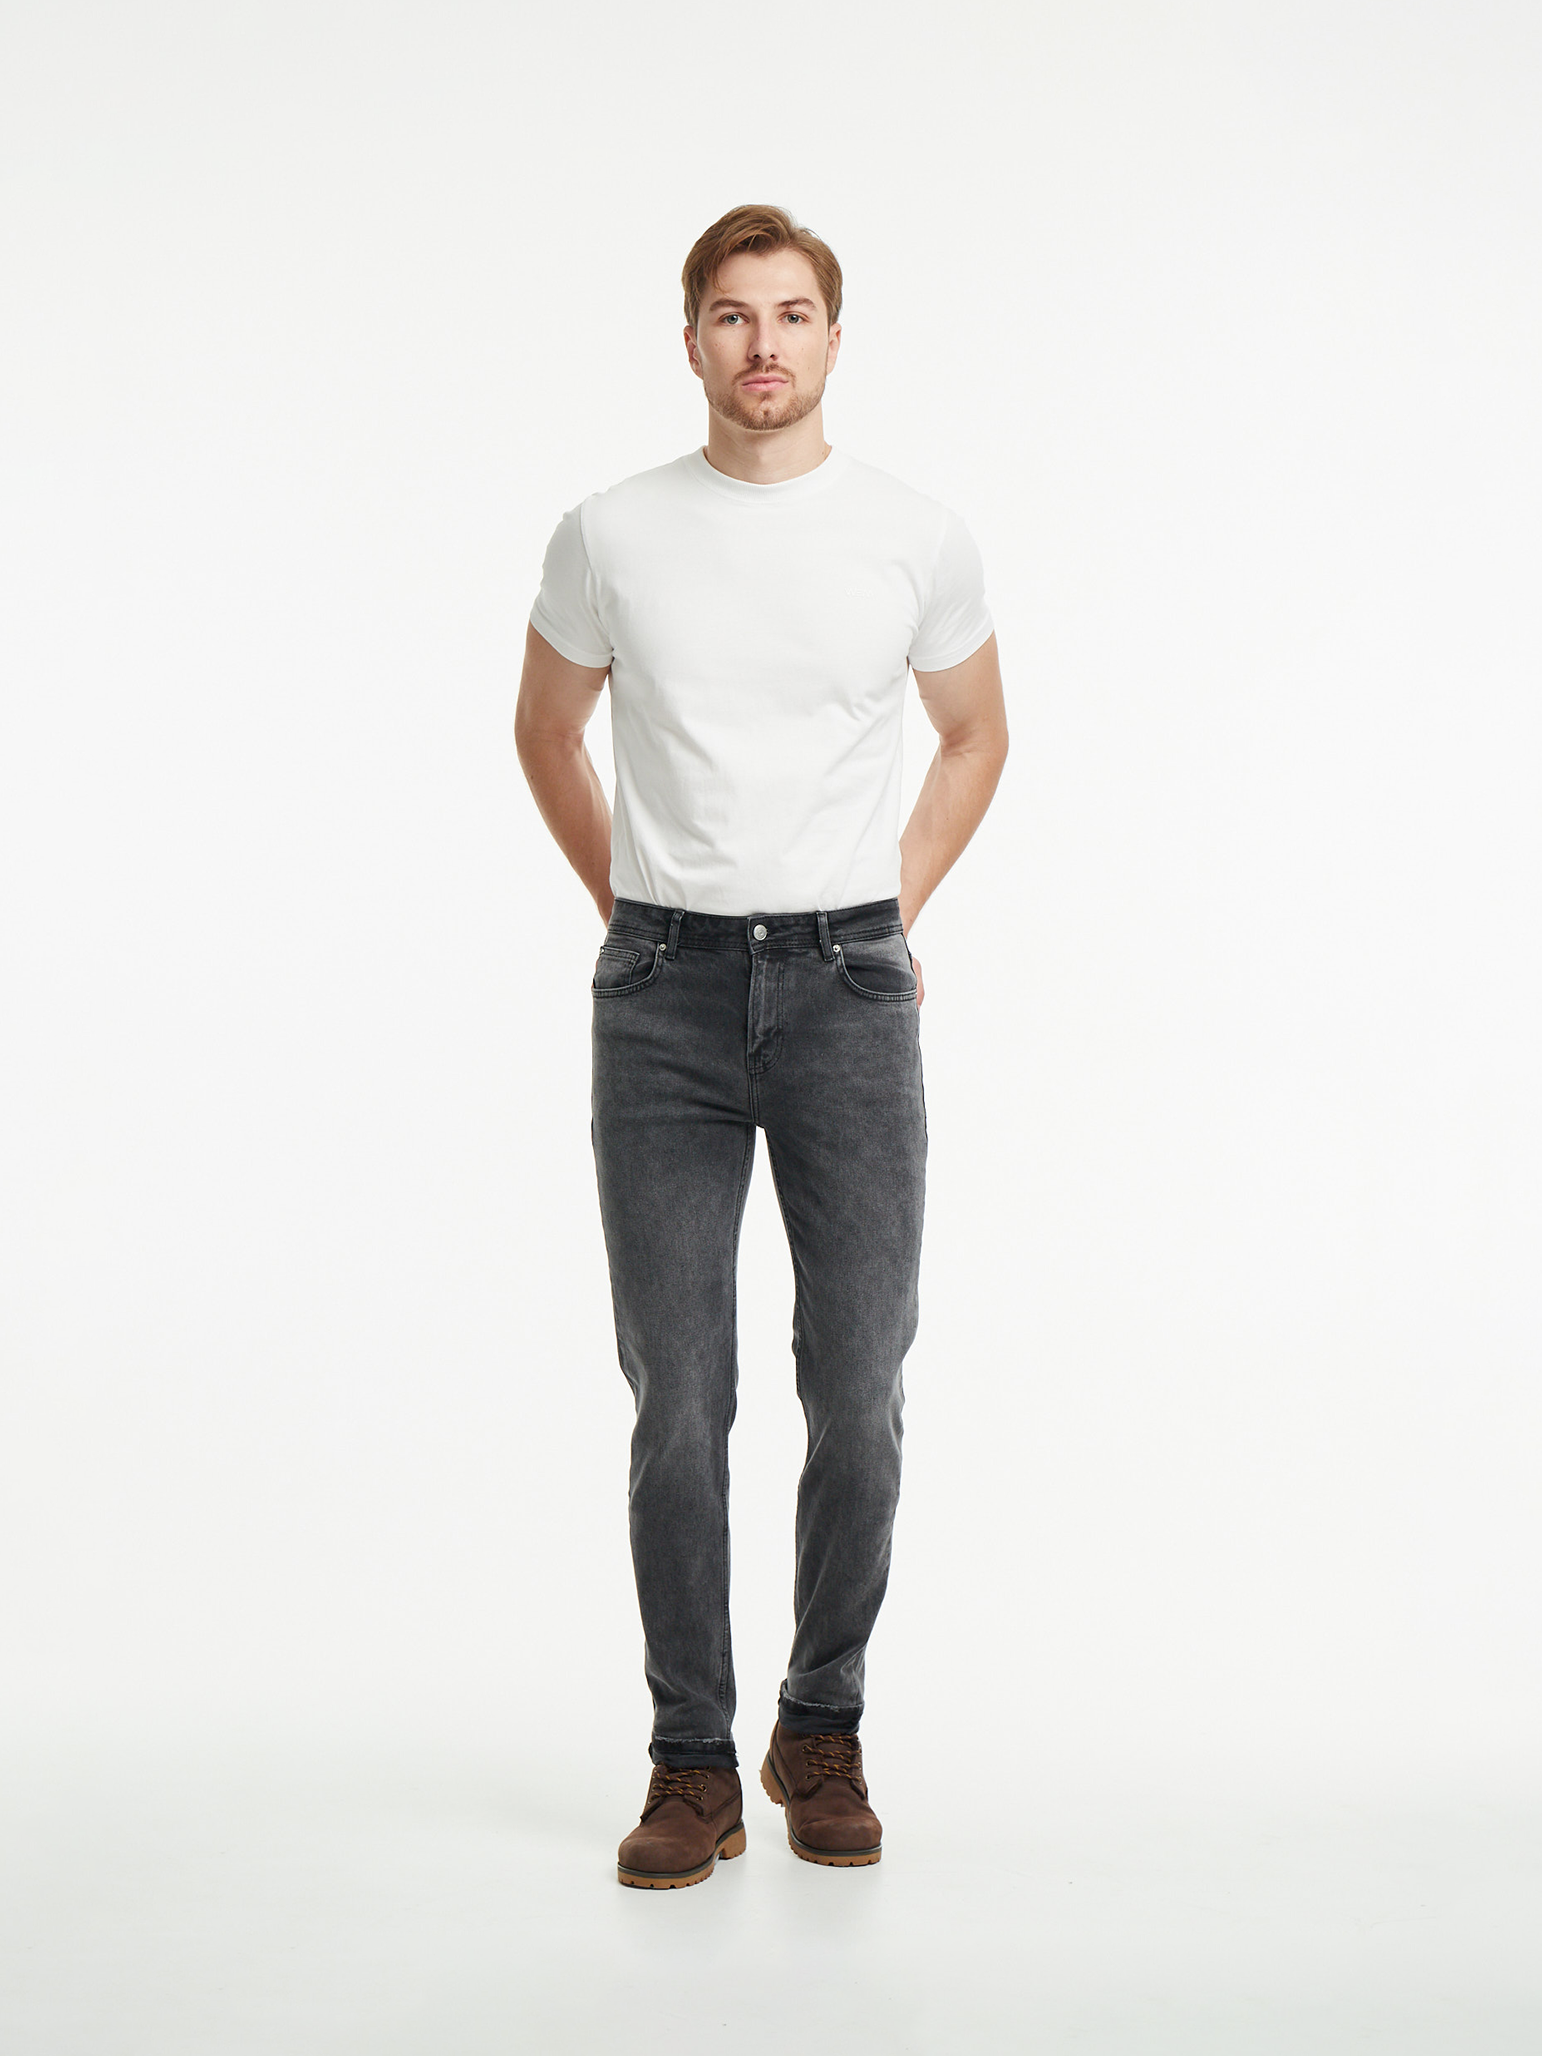 Чоловічі джинси Tapered OSCAR 1159 | Men's jeans Tapered OSCAR 1159